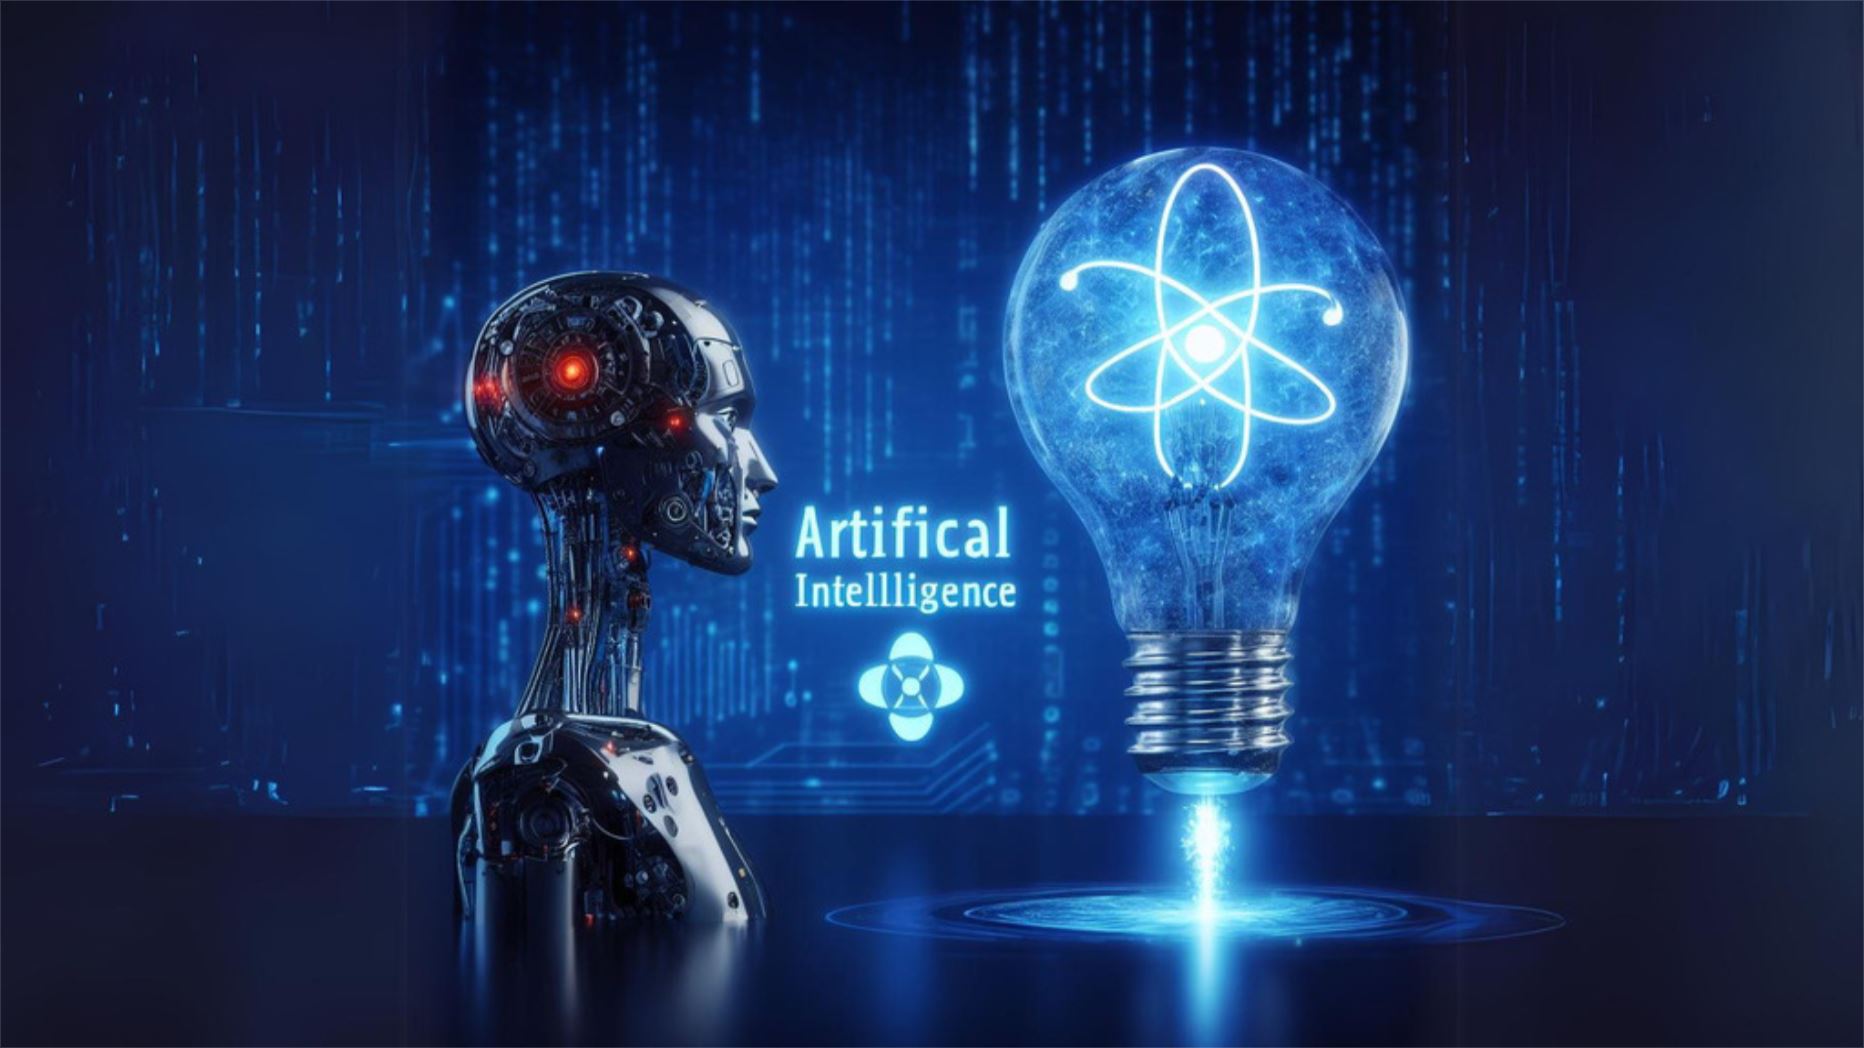 Microsoft CEO'su Satya Nadella, yapay zekanın ortaya çıkışını atom enerjisinin doğuşuyla karşılaştırıyor ve küresel düzenleme çağrısında bulunuyor - Dünyadan Güncel Teknoloji Haberleri